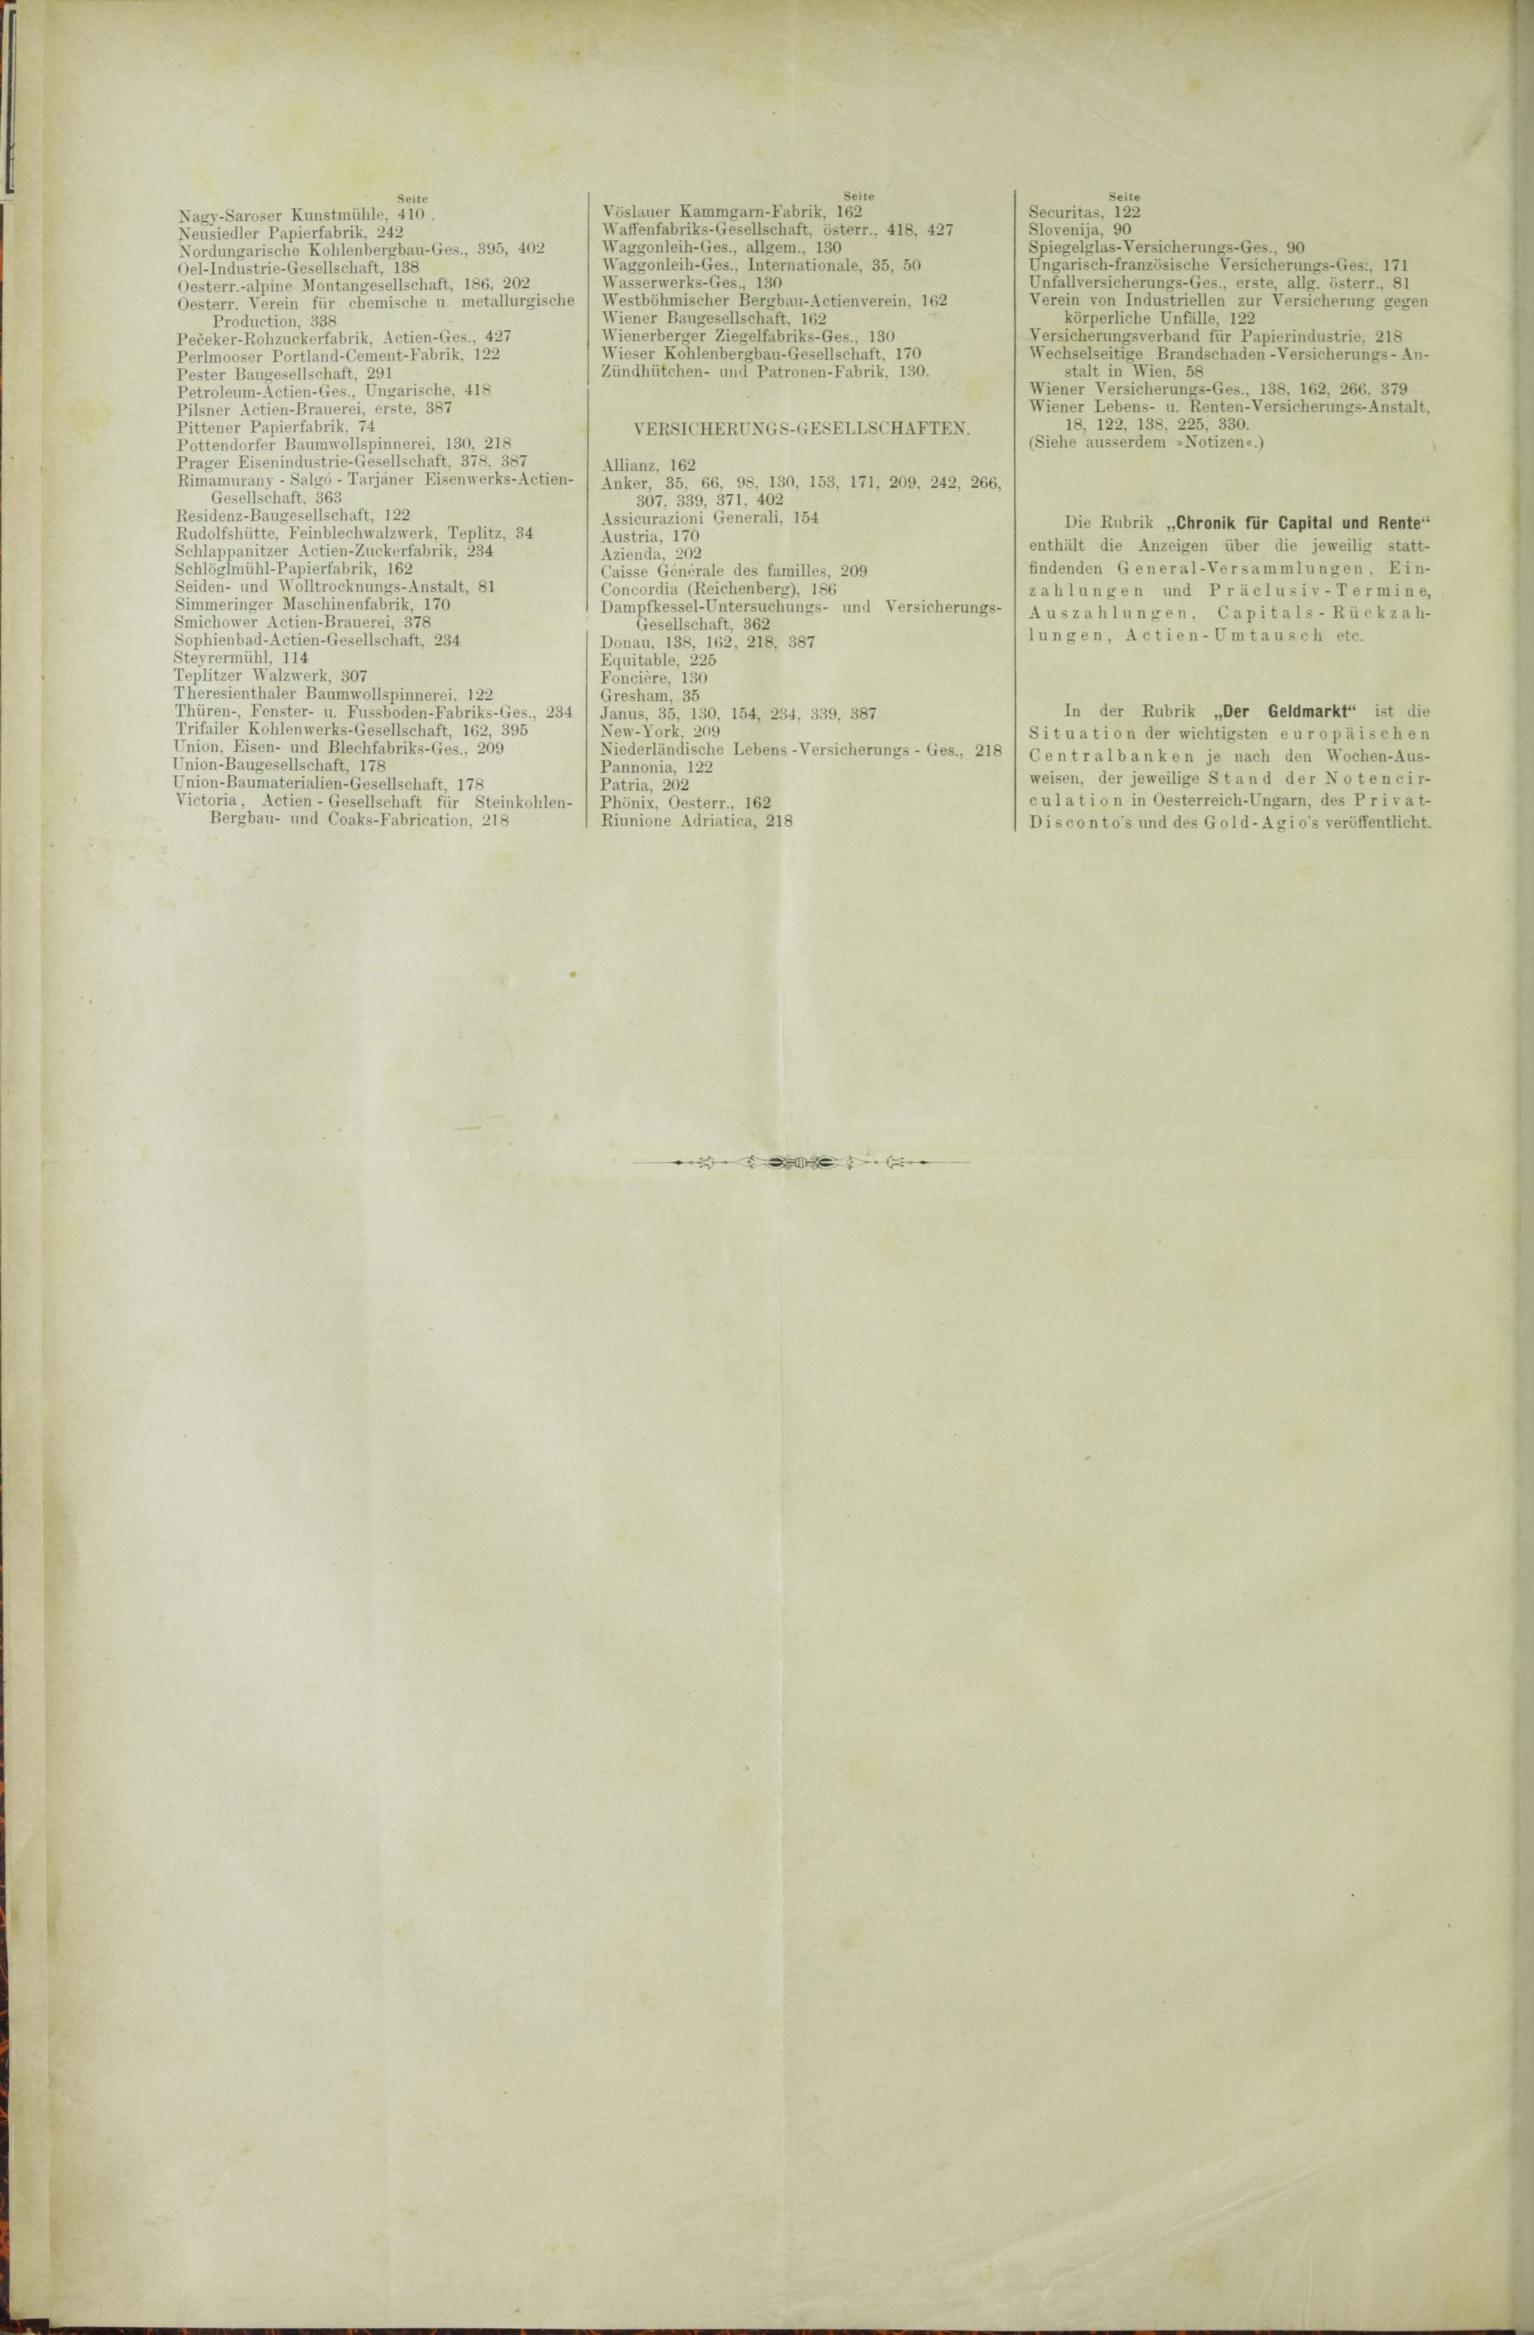 Der Tresor 12.02.1885 - Seite 12